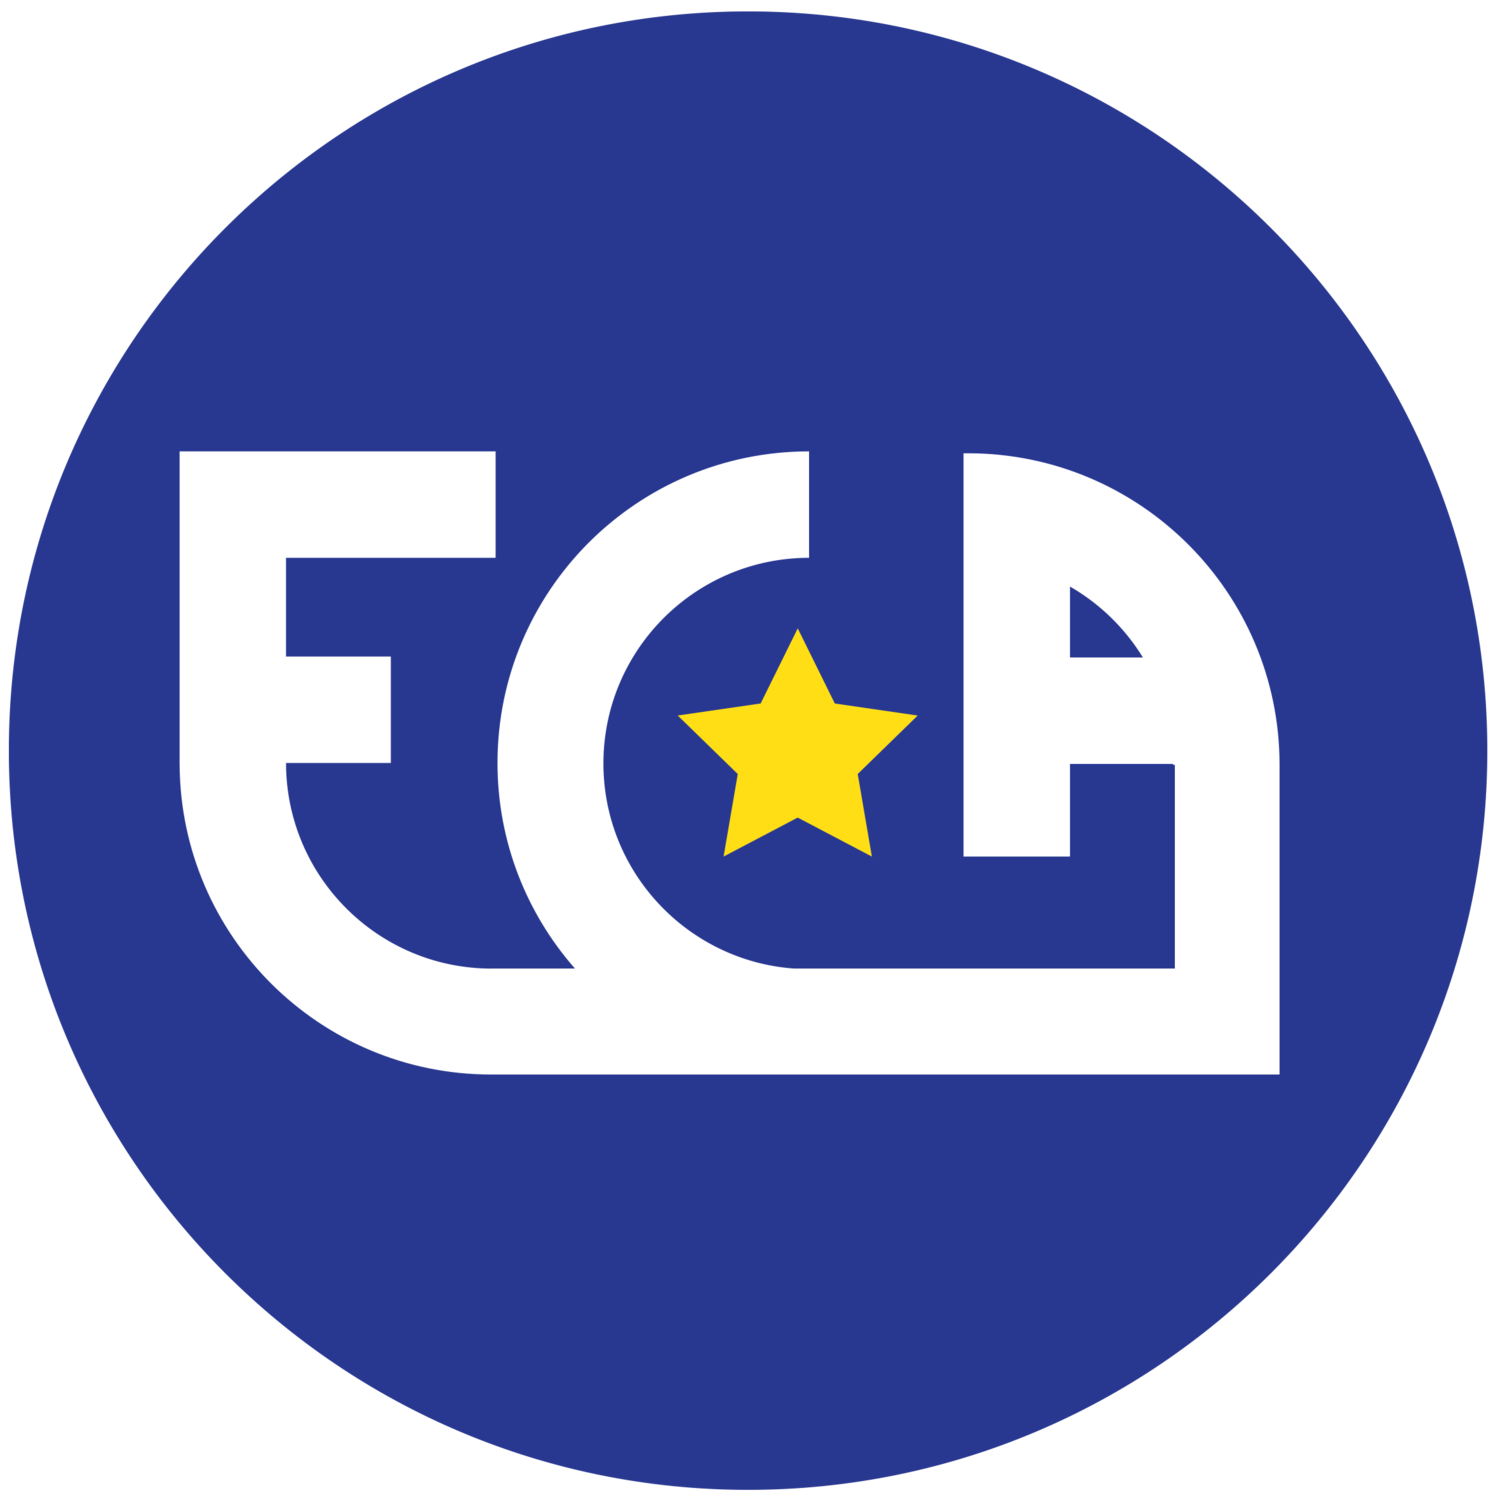 ECA Maastricht